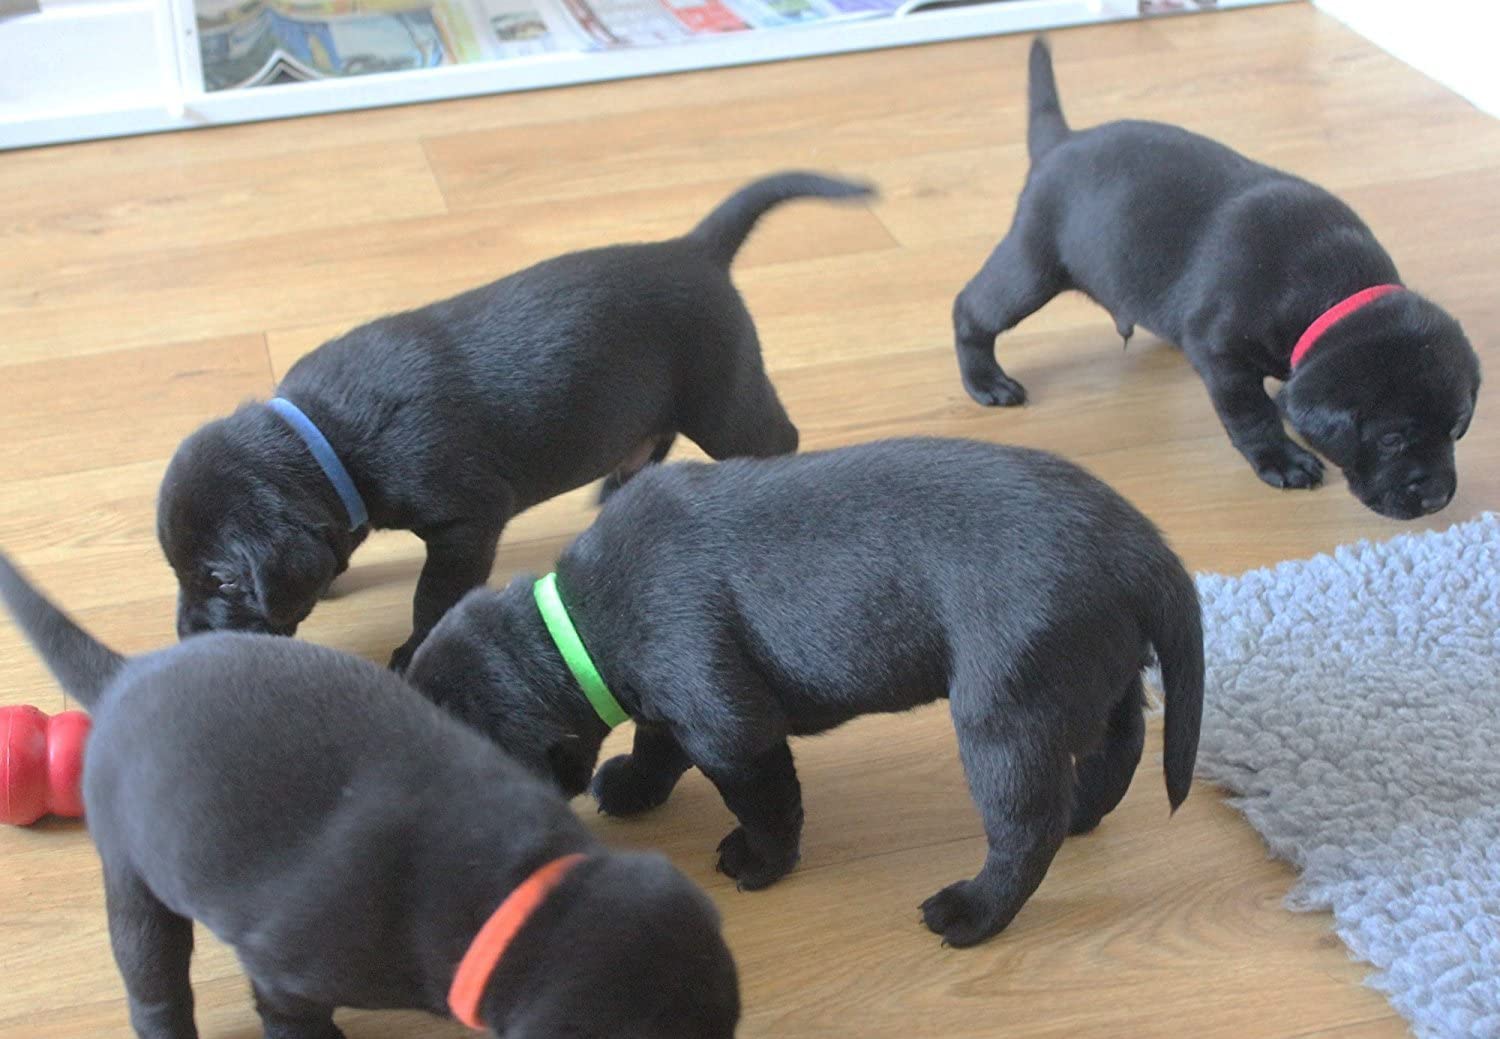  Zelro - Collar de identificación para cachorros de 15 colores, bandas de identificación de algodón ajustables de doble cara para mascotas, cachorros, gatitos, conejos, cerdos y otros animales pequeños 